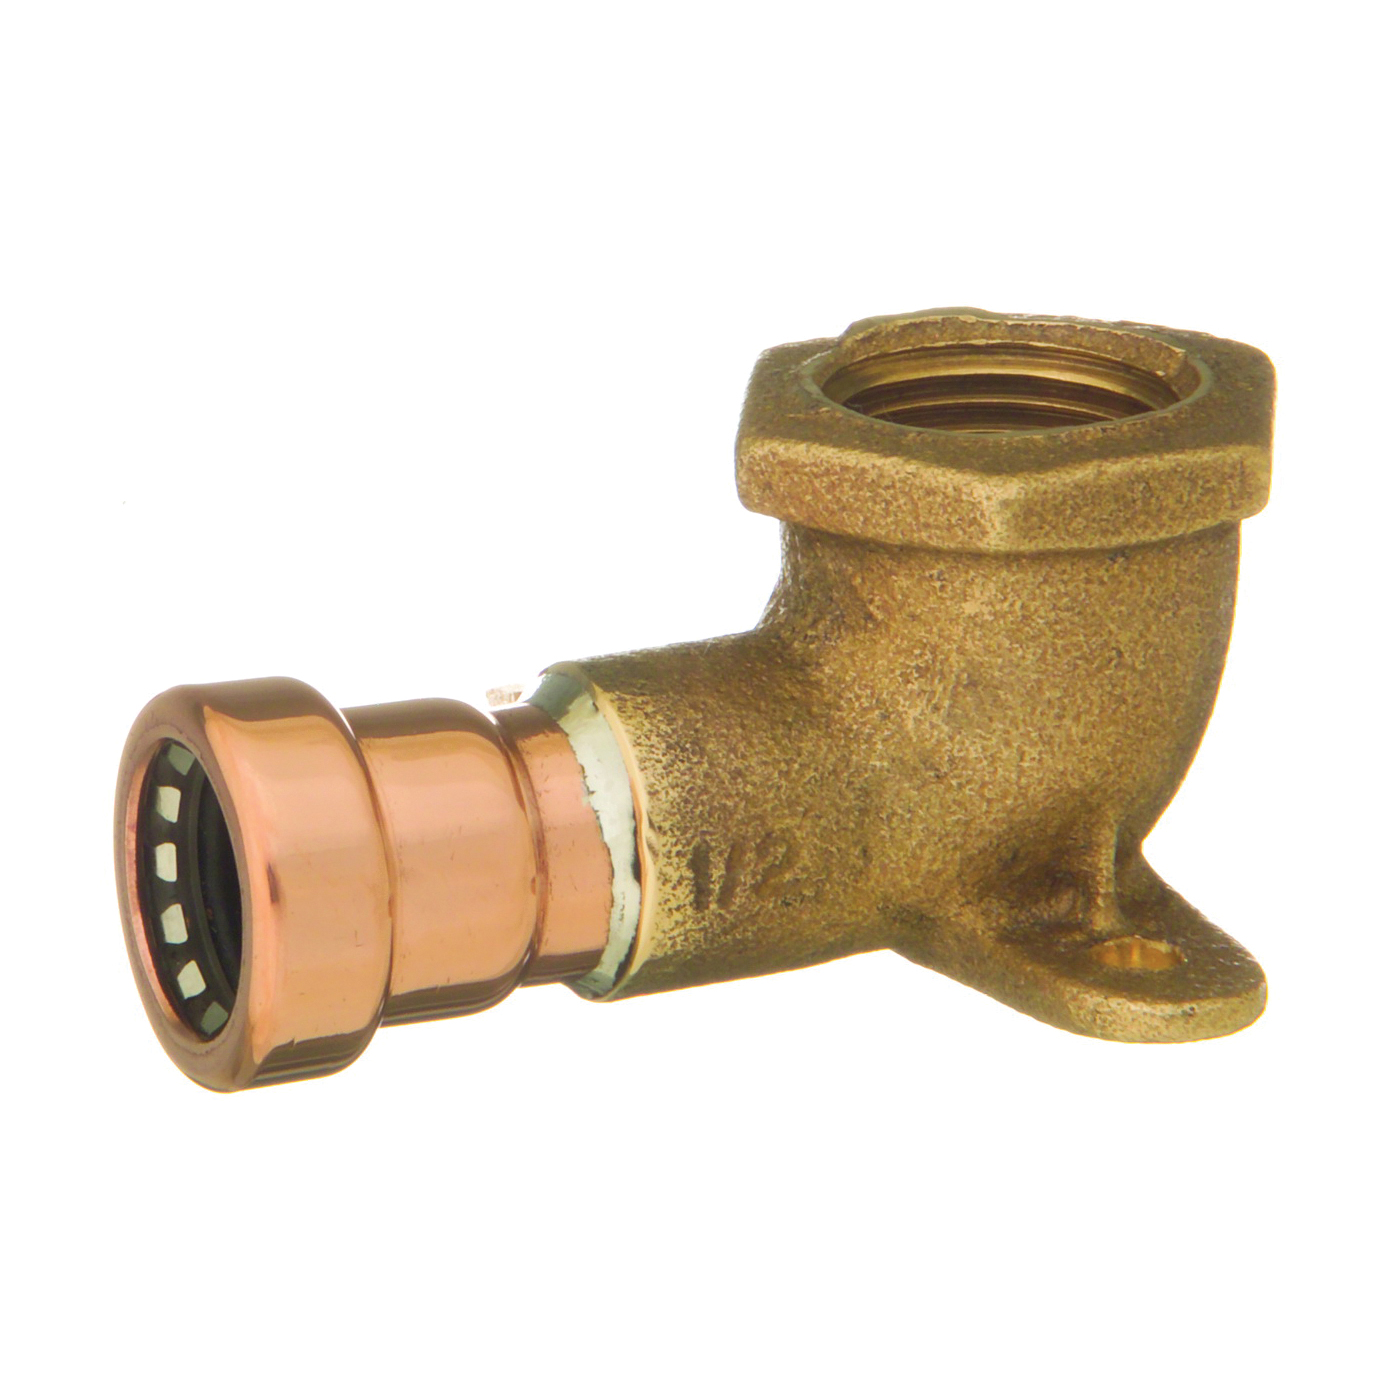 CopperLoc Series 10170835 Drop Ear Non-Removable Tube Pipe Elbow, 1/2 in, 90 deg Angle, Copper, 200 psi Pressure